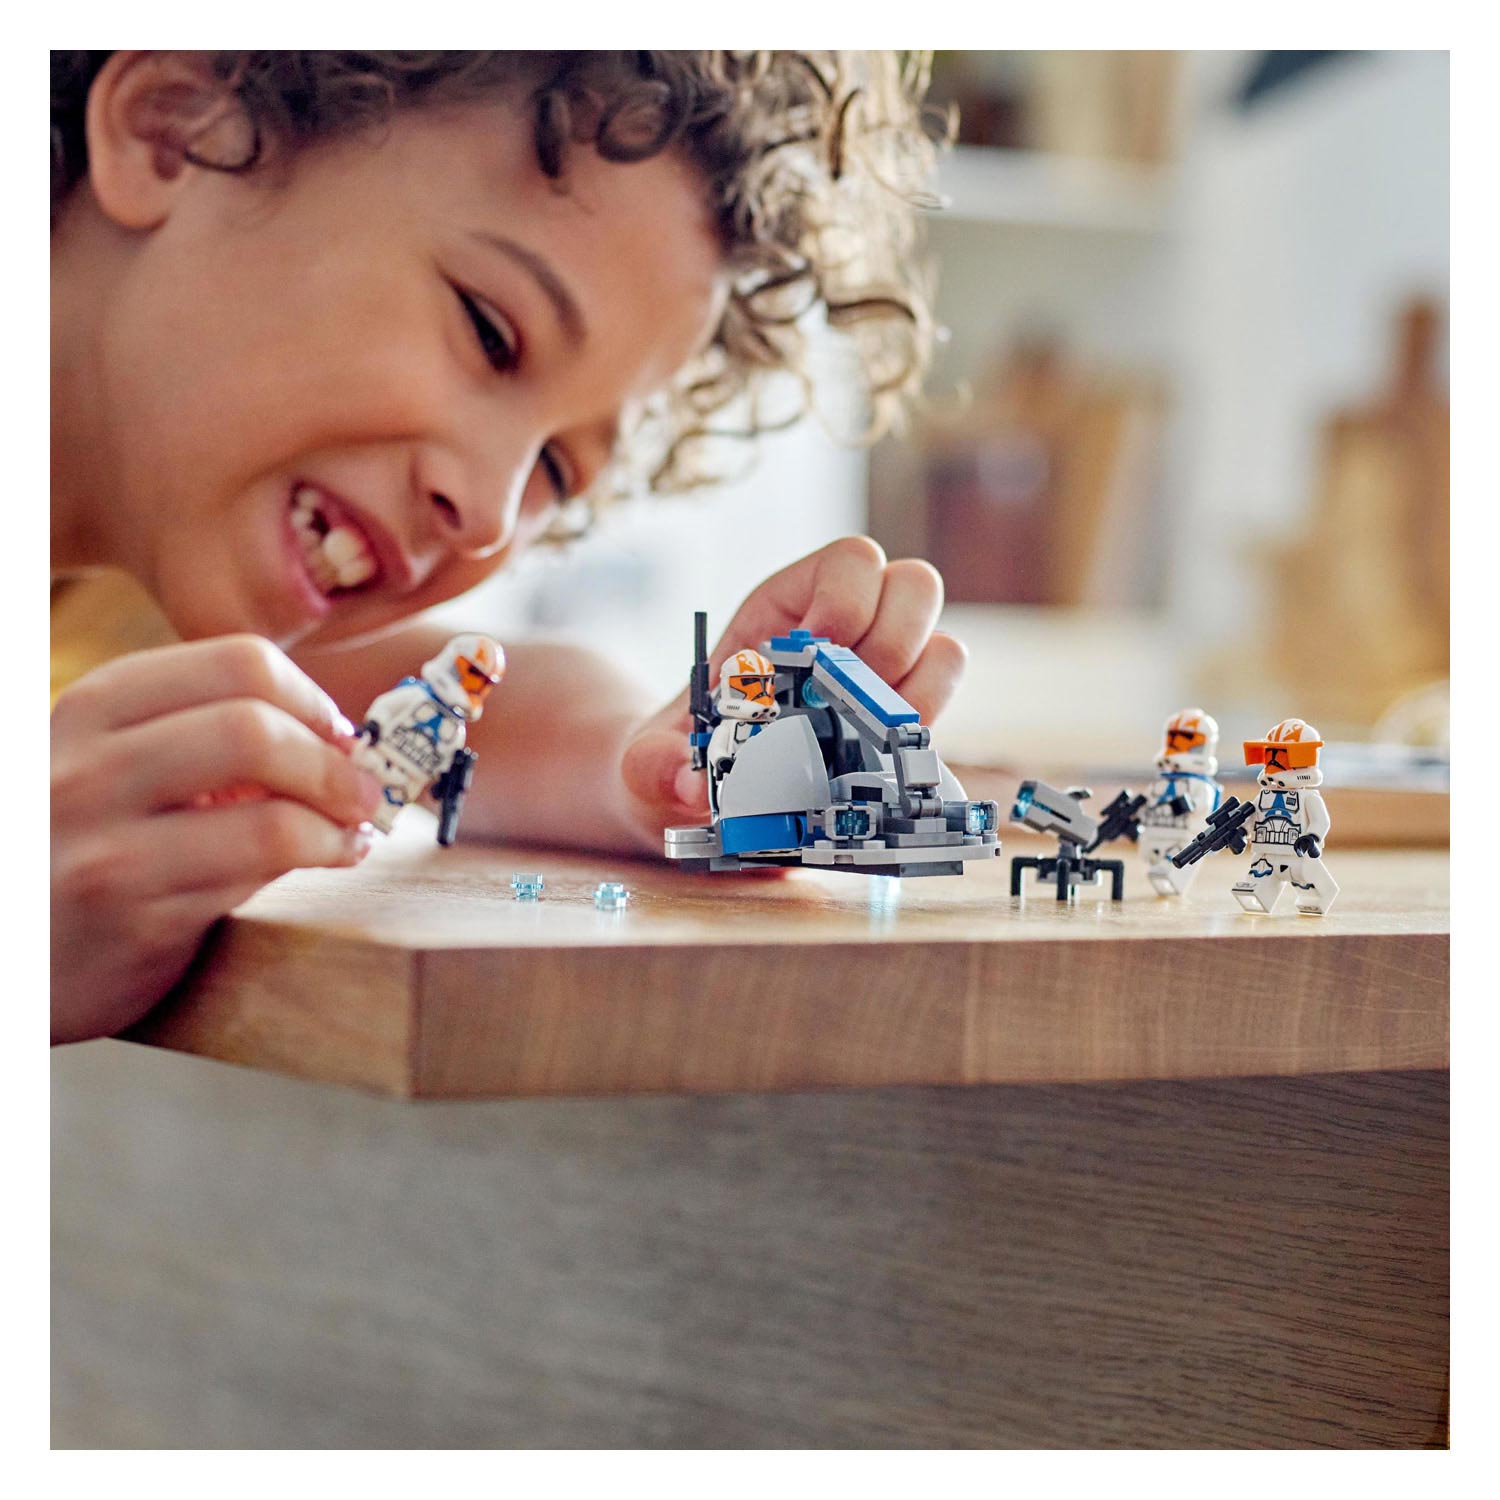 LEGO Star Wars 75359 332Nd Ahsoka's Clone Trooper Battle Pack